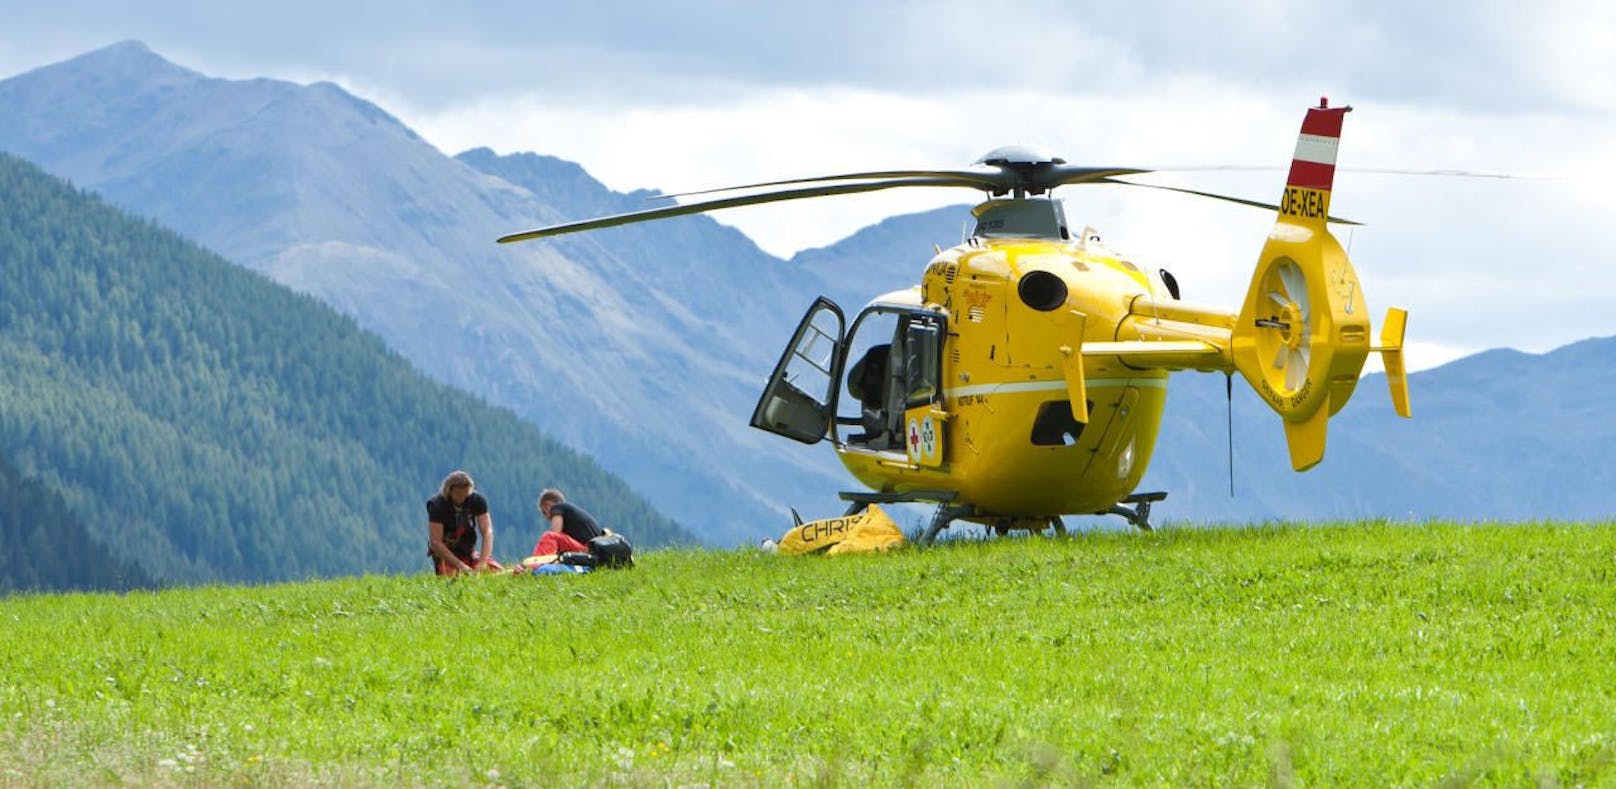 Flugrettung, die Mannschaft des OeAMTC-Hubschraubers Christophorus 7 versorgen Ausrüstung und Gerät auf einer Wiese nach einer Taubergung. 